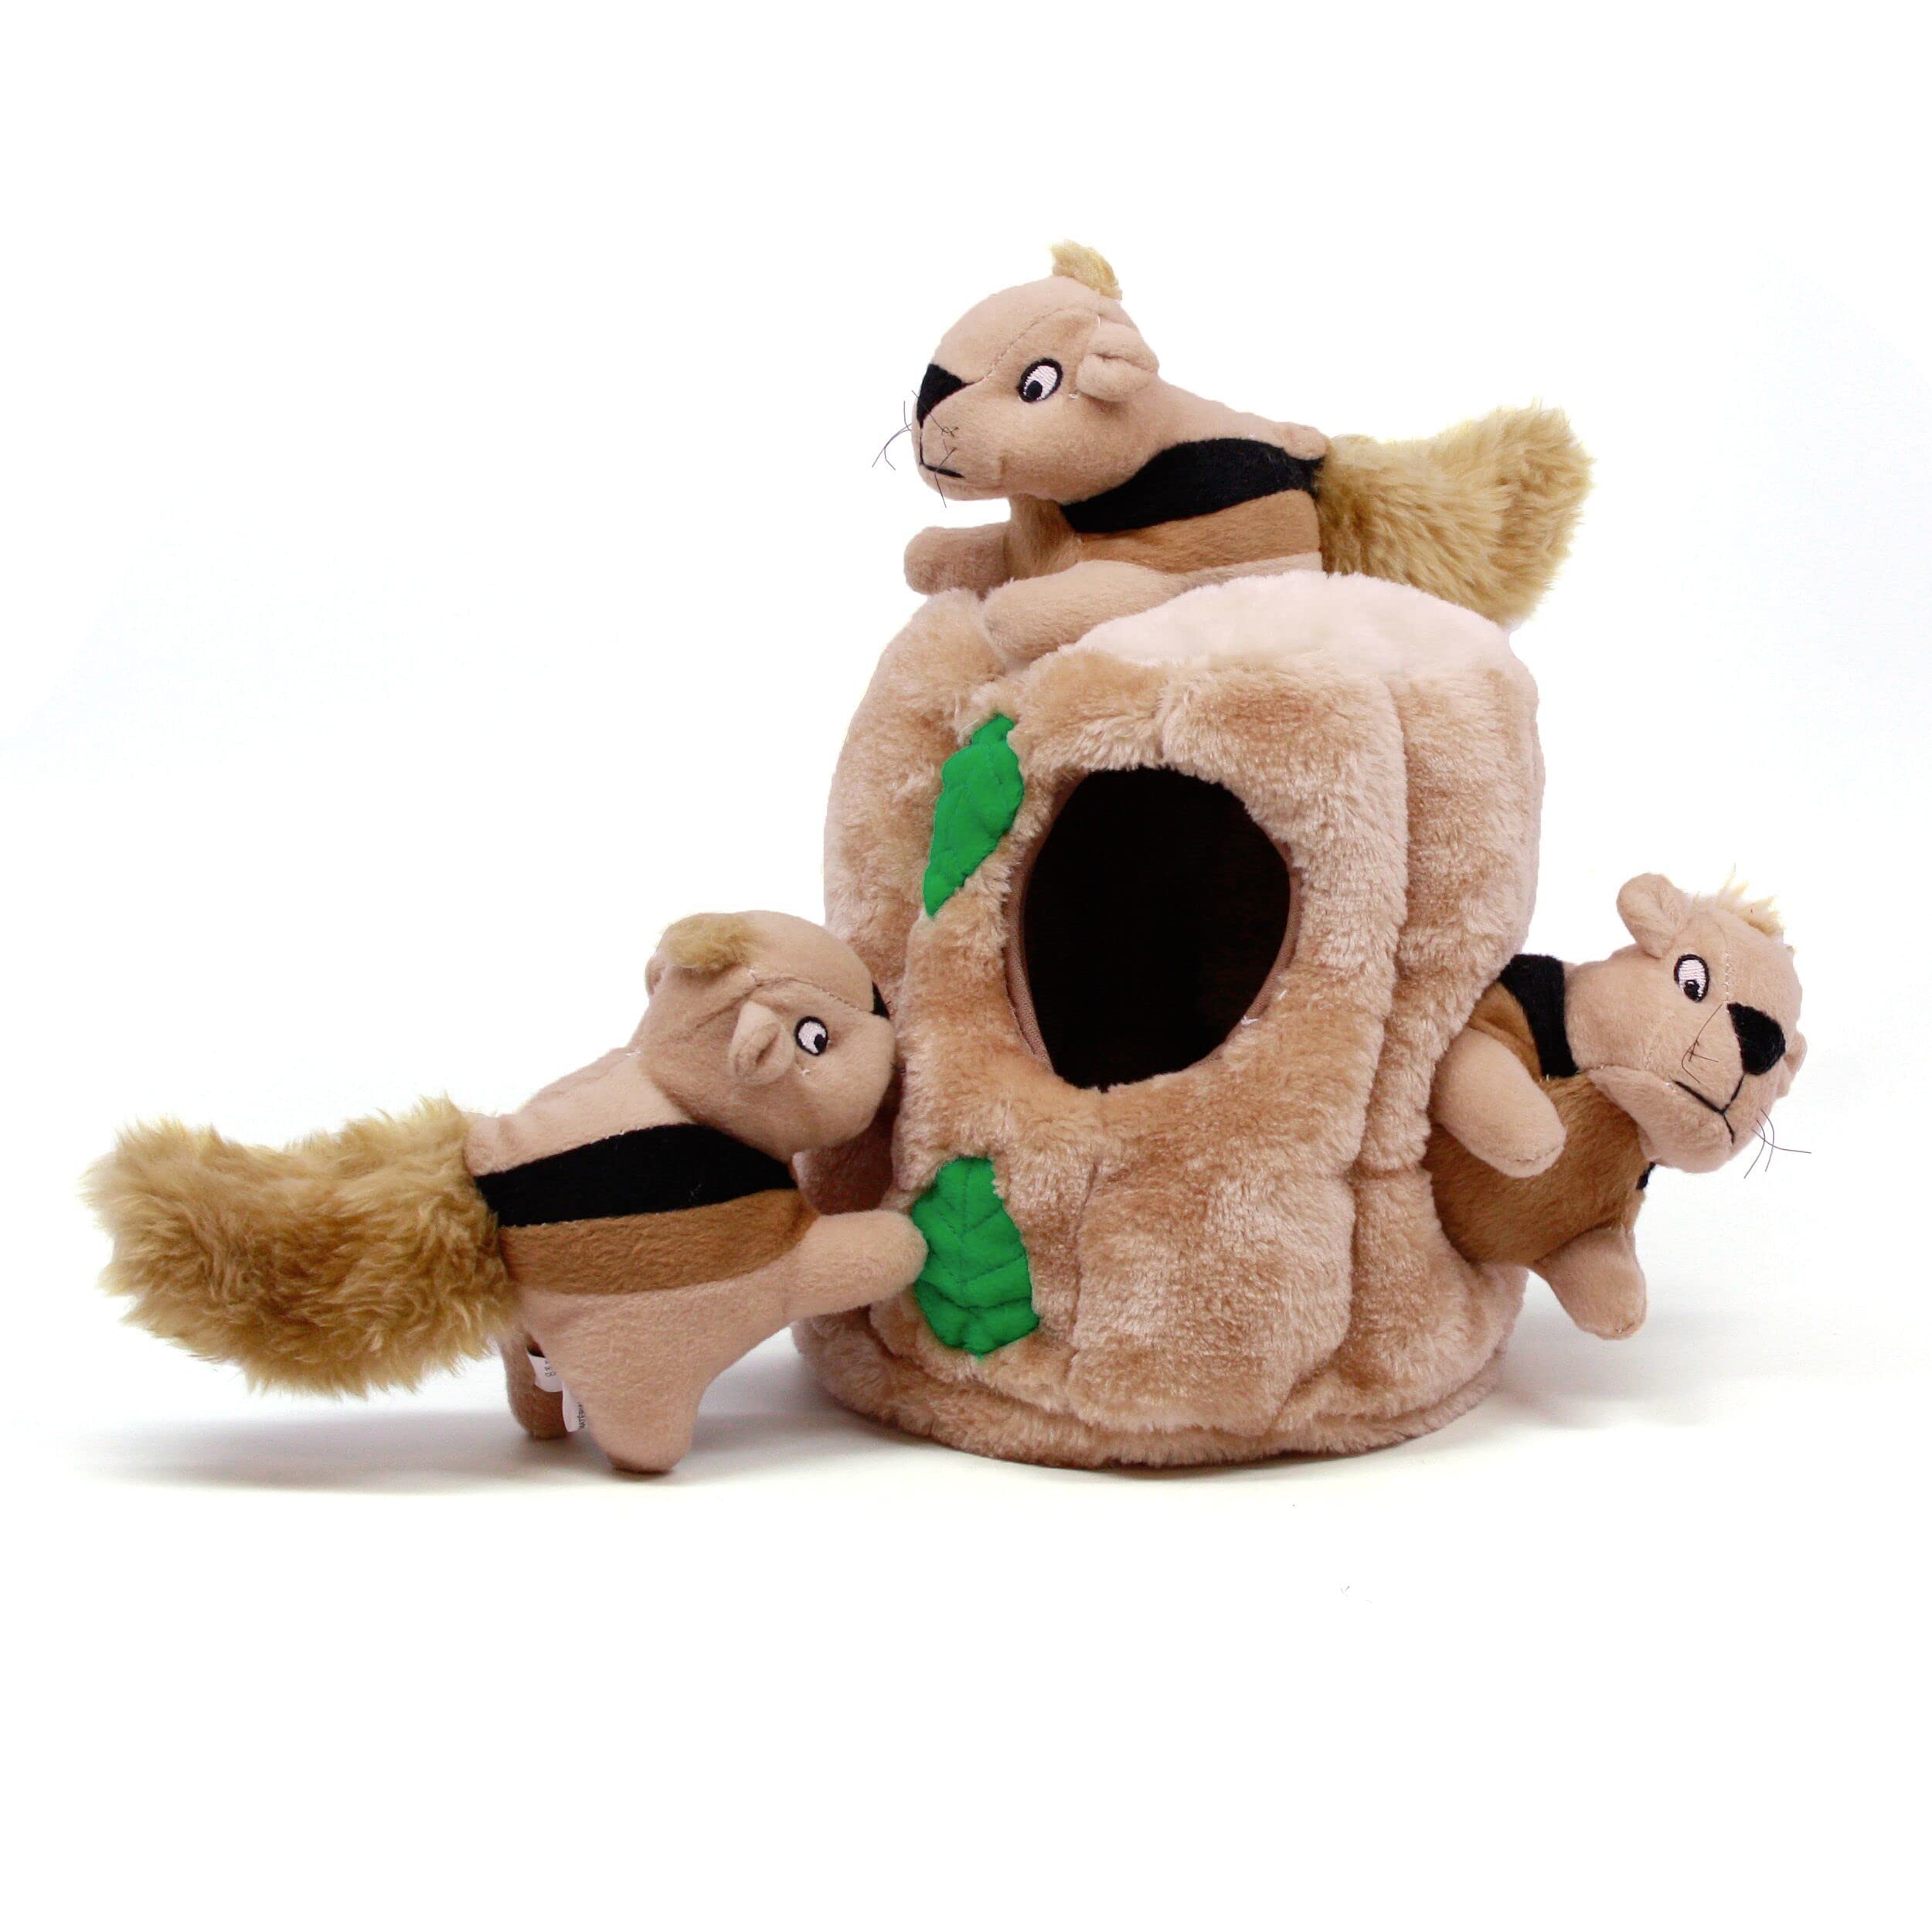 Outward Hound Kyjen 31003 Hide A Squirrel Plüsch Hundespielzeug Quietschspielzeug 4-teilig, Größe Jumbo, Braun